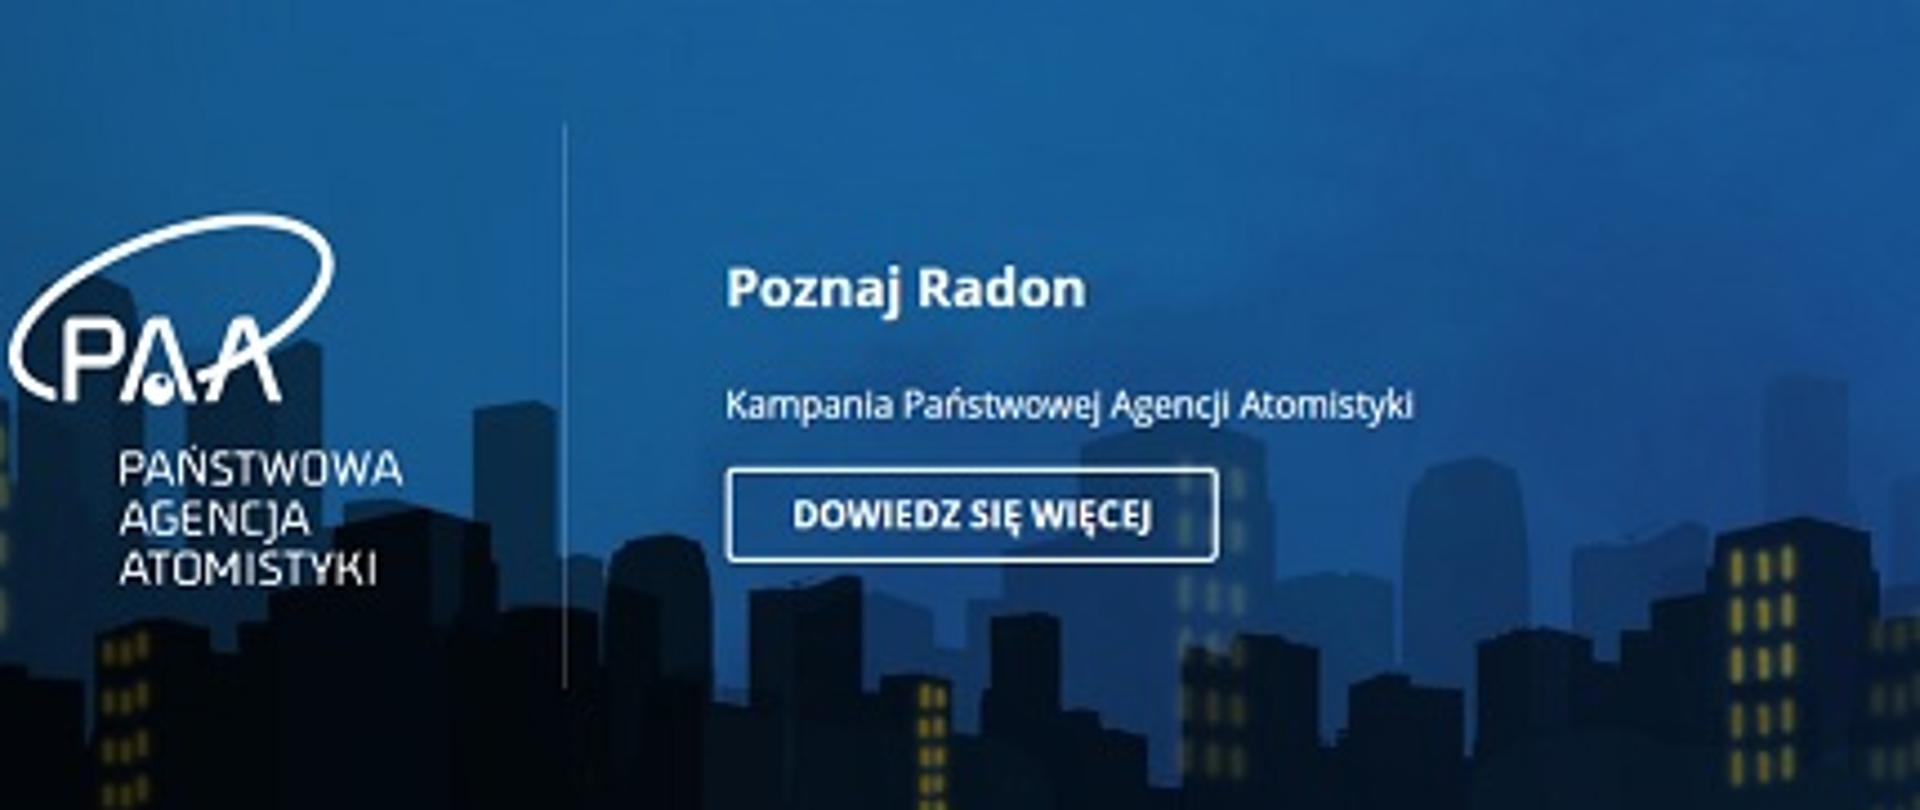 Grafika przedstawia logo Państwowej Agencji Atomistyki oraz hasło kampanii "Poznaj radon", w tle znajdują się wieżowce nocą